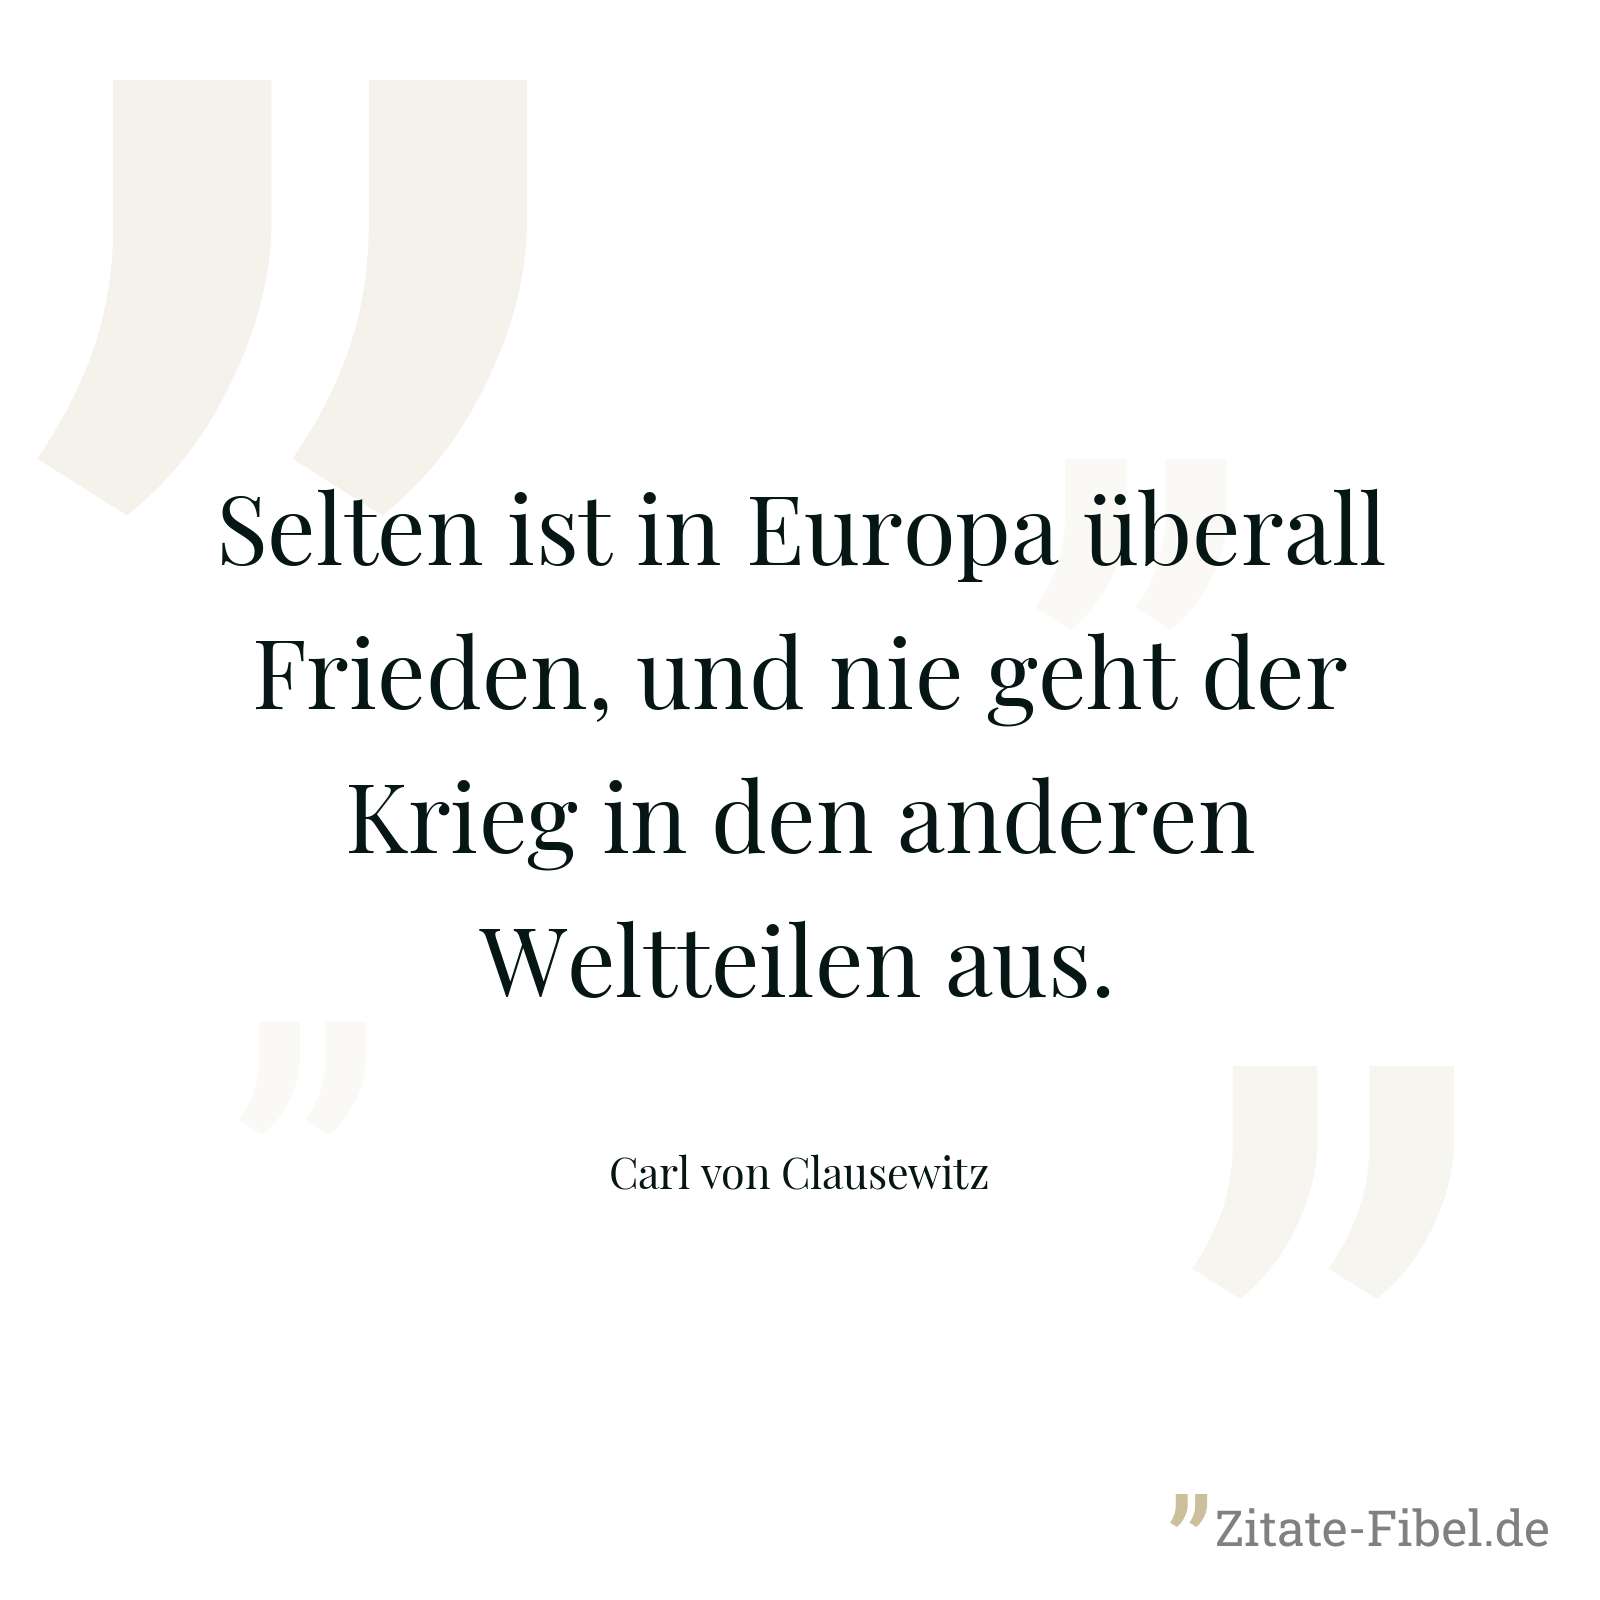 Selten ist in Europa überall Frieden, und nie geht der Krieg in den anderen Weltteilen aus. - Carl von Clausewitz